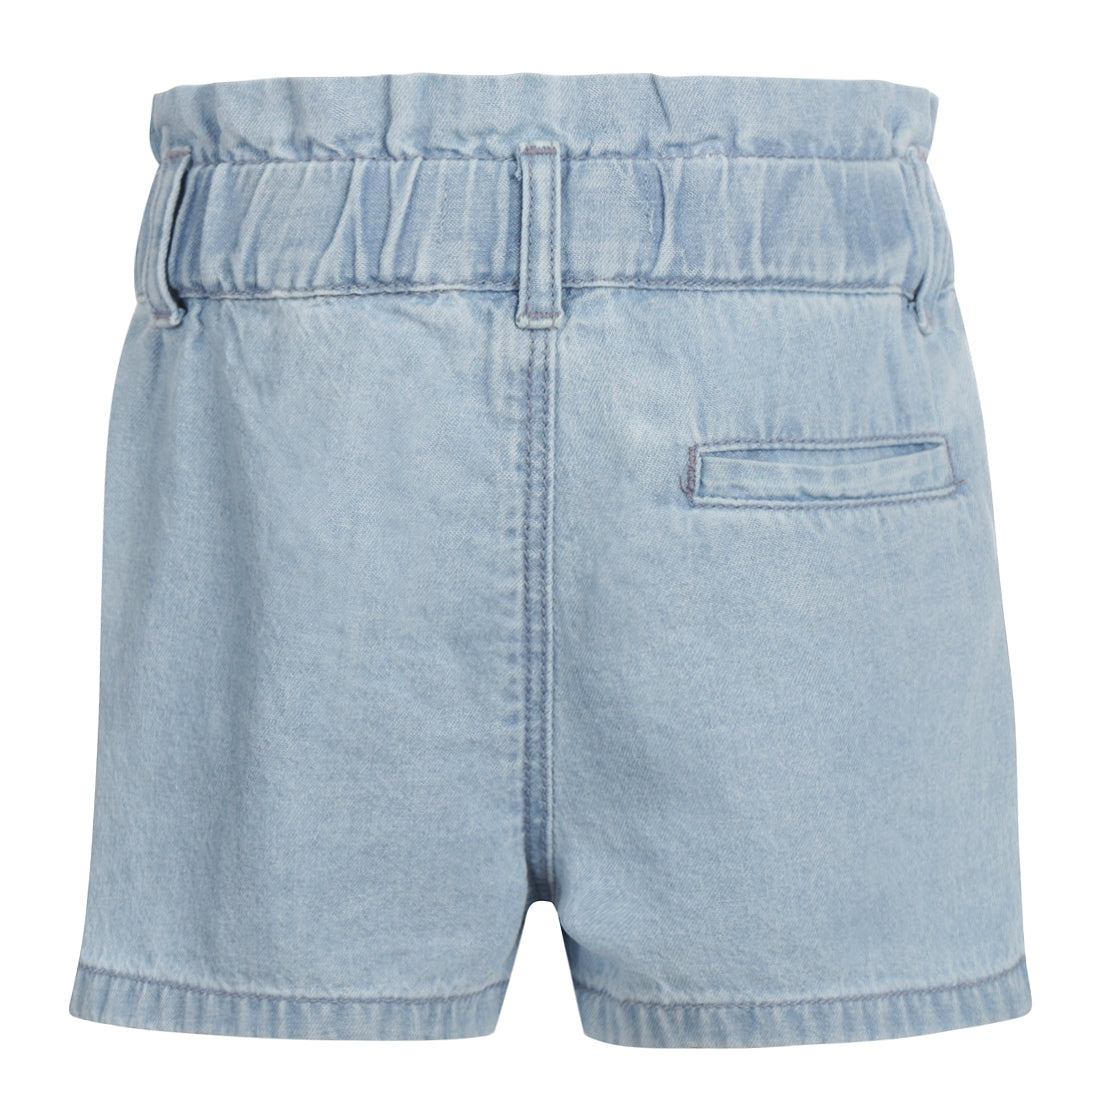 Meisjes Jeans shorts van Koko Noko in de kleur Blue jeans in maat 128.